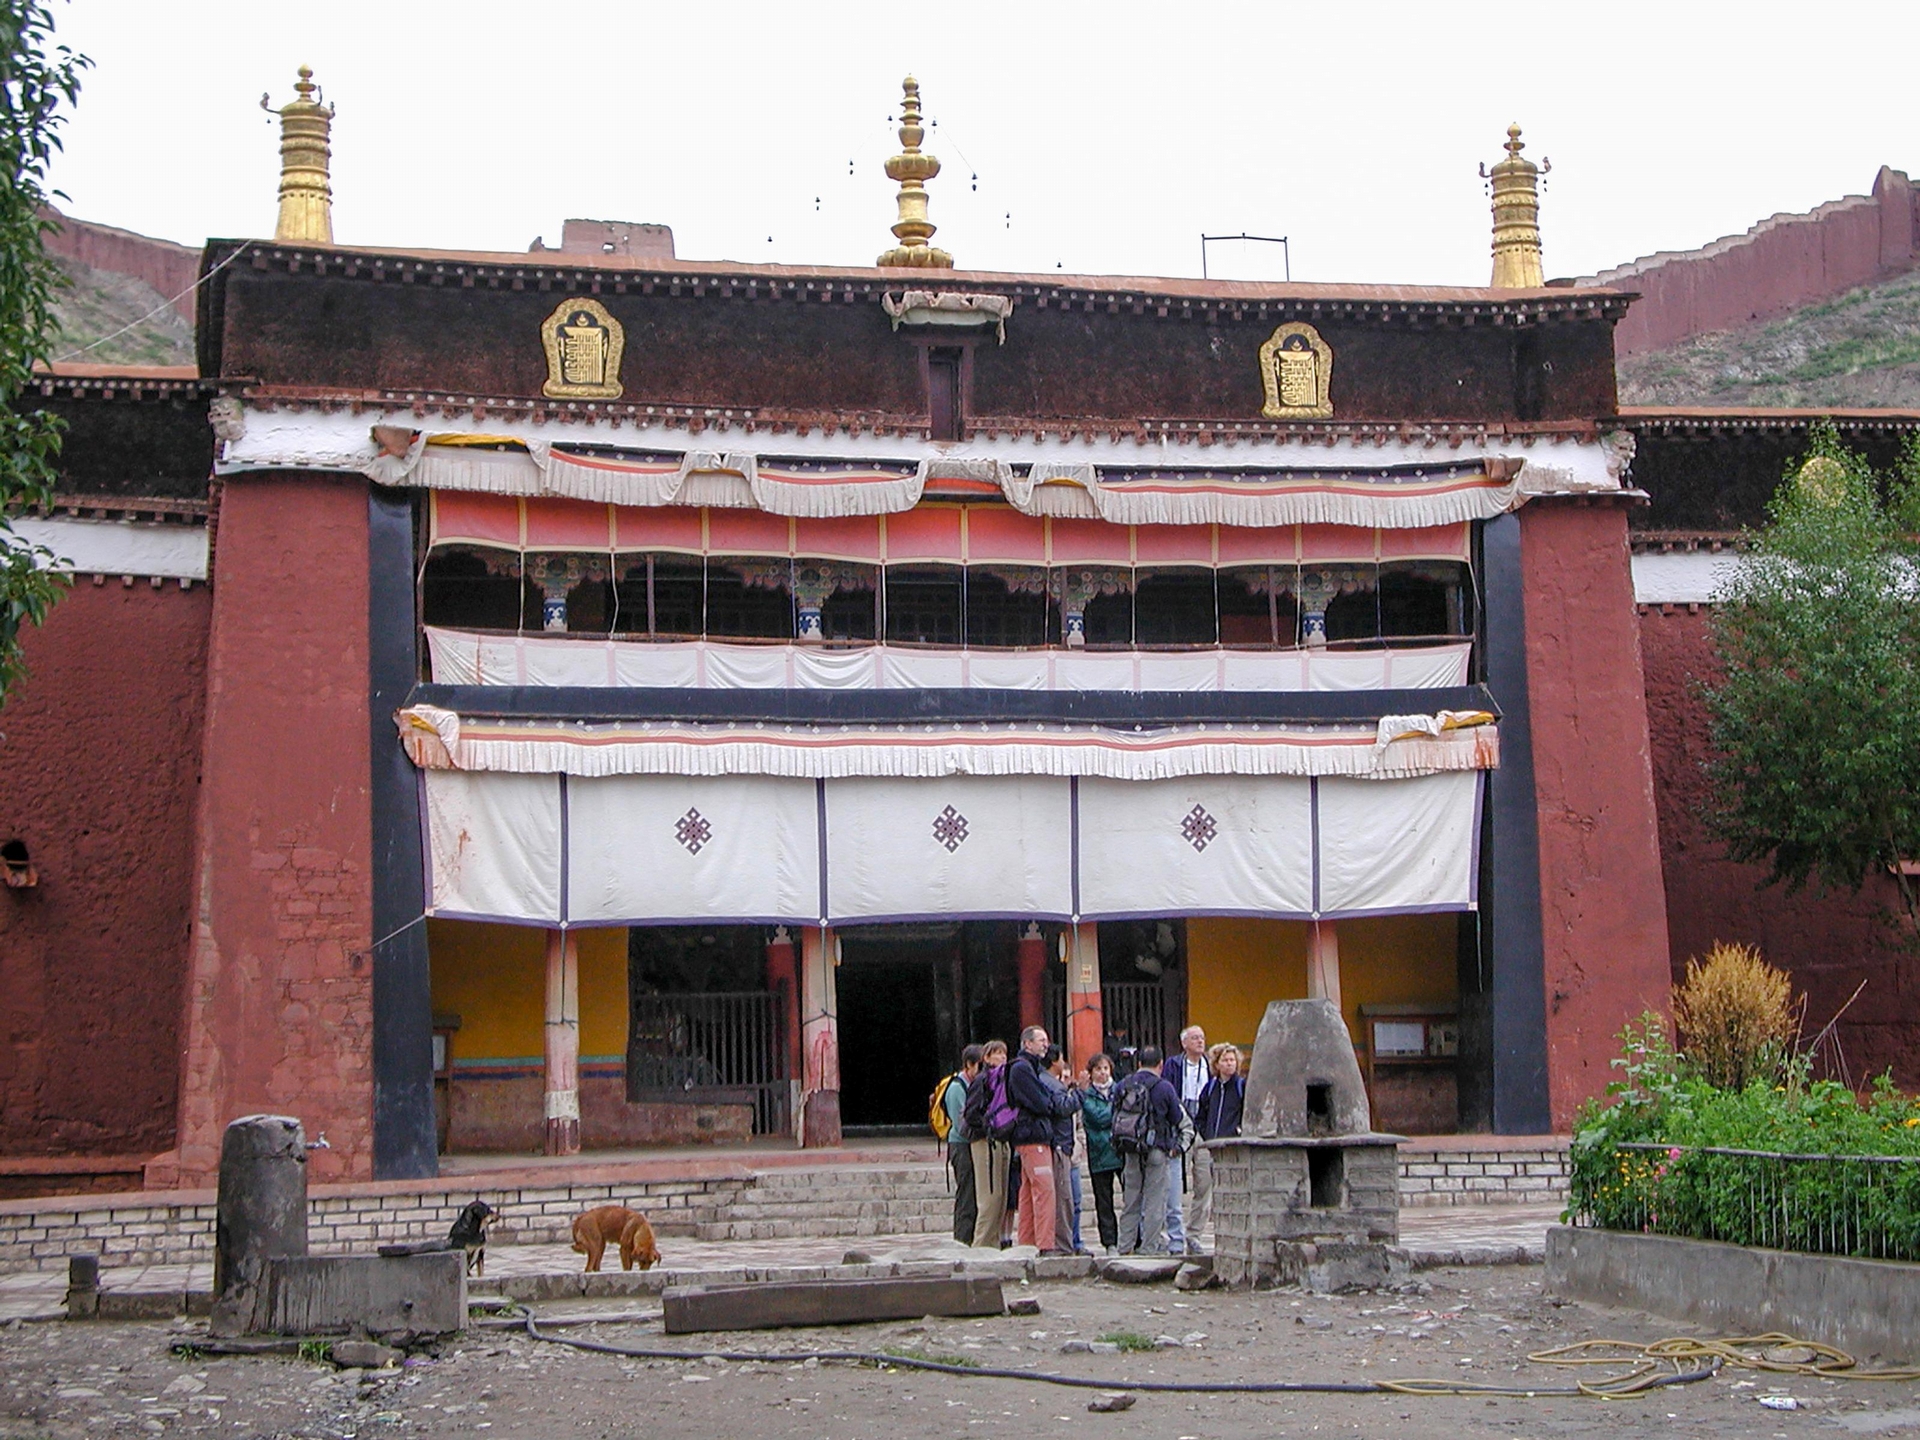 白居寺建於600年前的明朝，由當時的江孜法王熱丹貢桑帕巴所建，是一座薩加、噶當與格魯三個藏傳佛教教派共存的寺院。